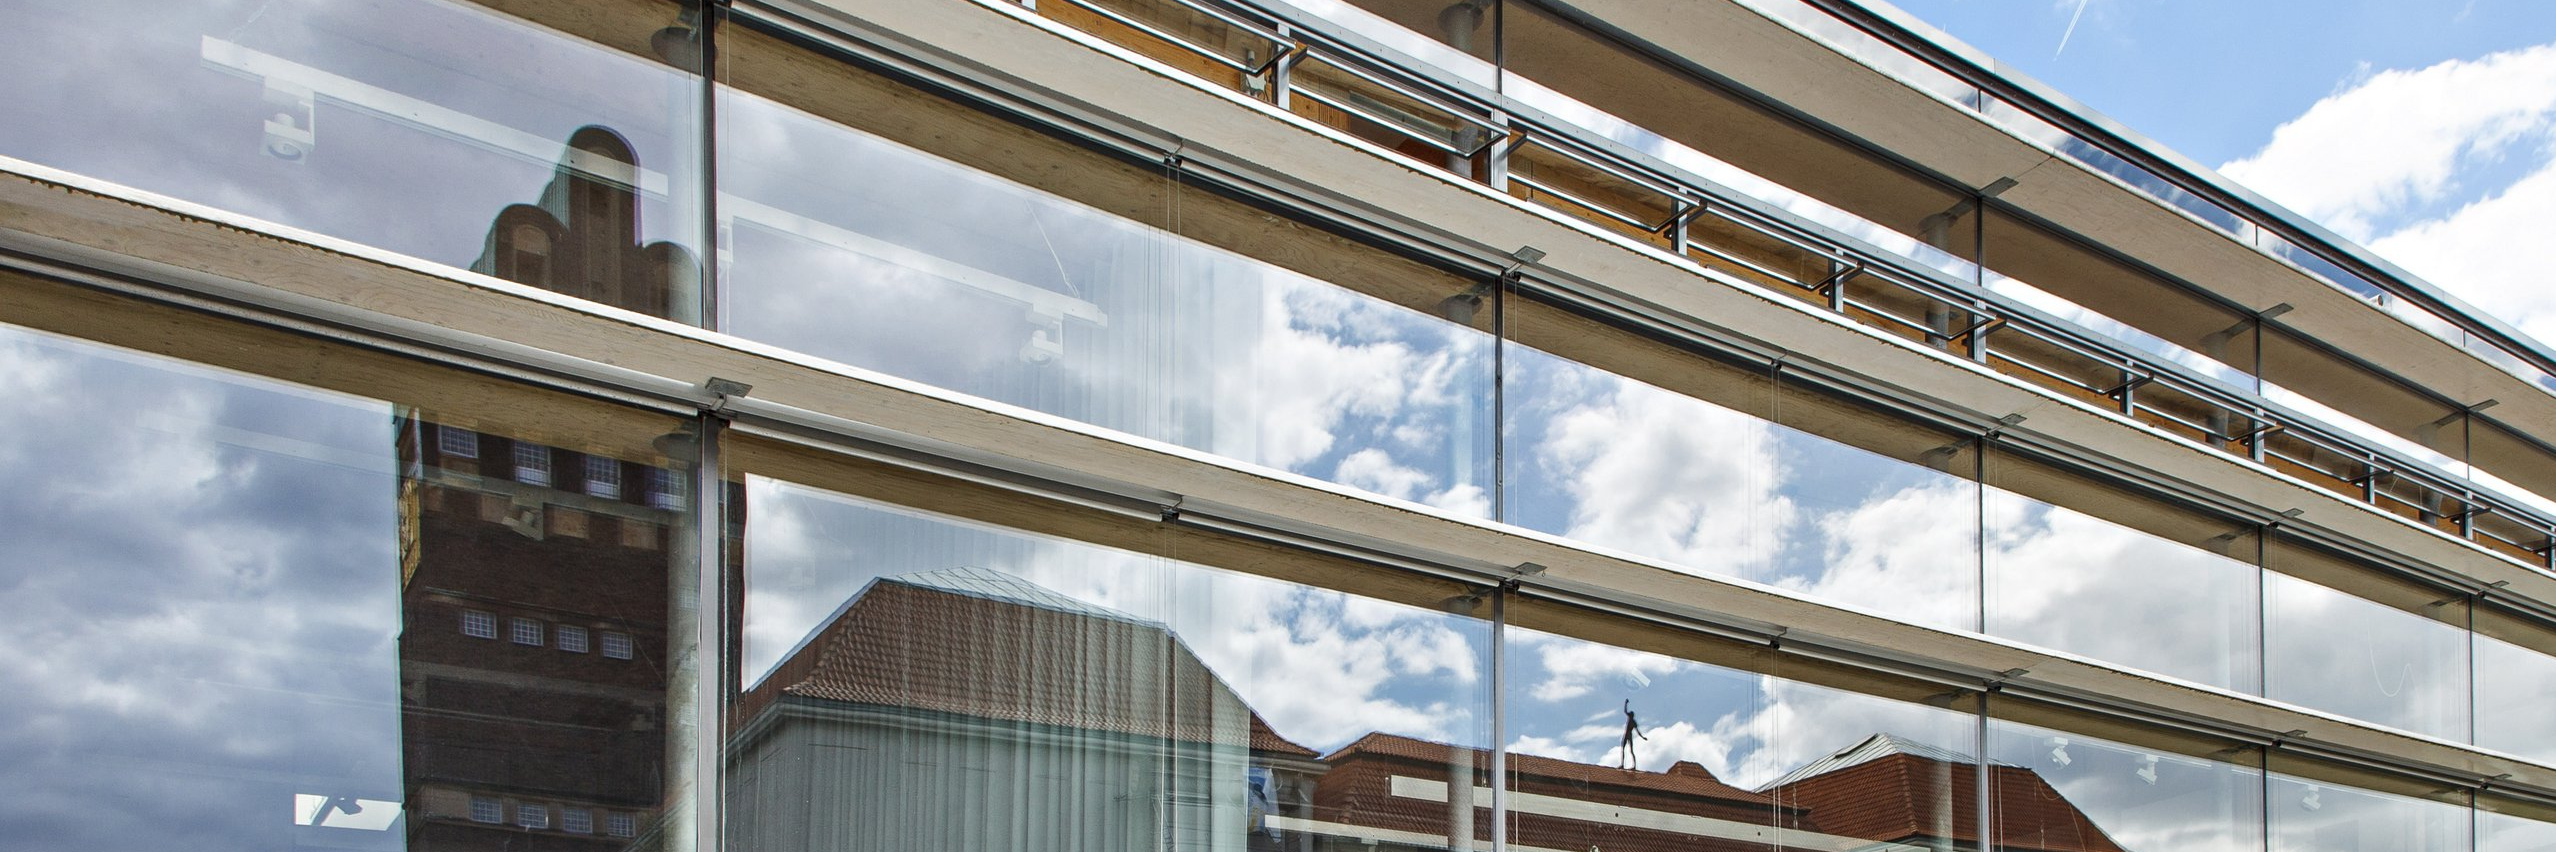 Gläserne Außenfassade des Fachbereich Gestaltung mit Spiegelung der Gebäude des Weltkulturerbes Mathildenhöhe